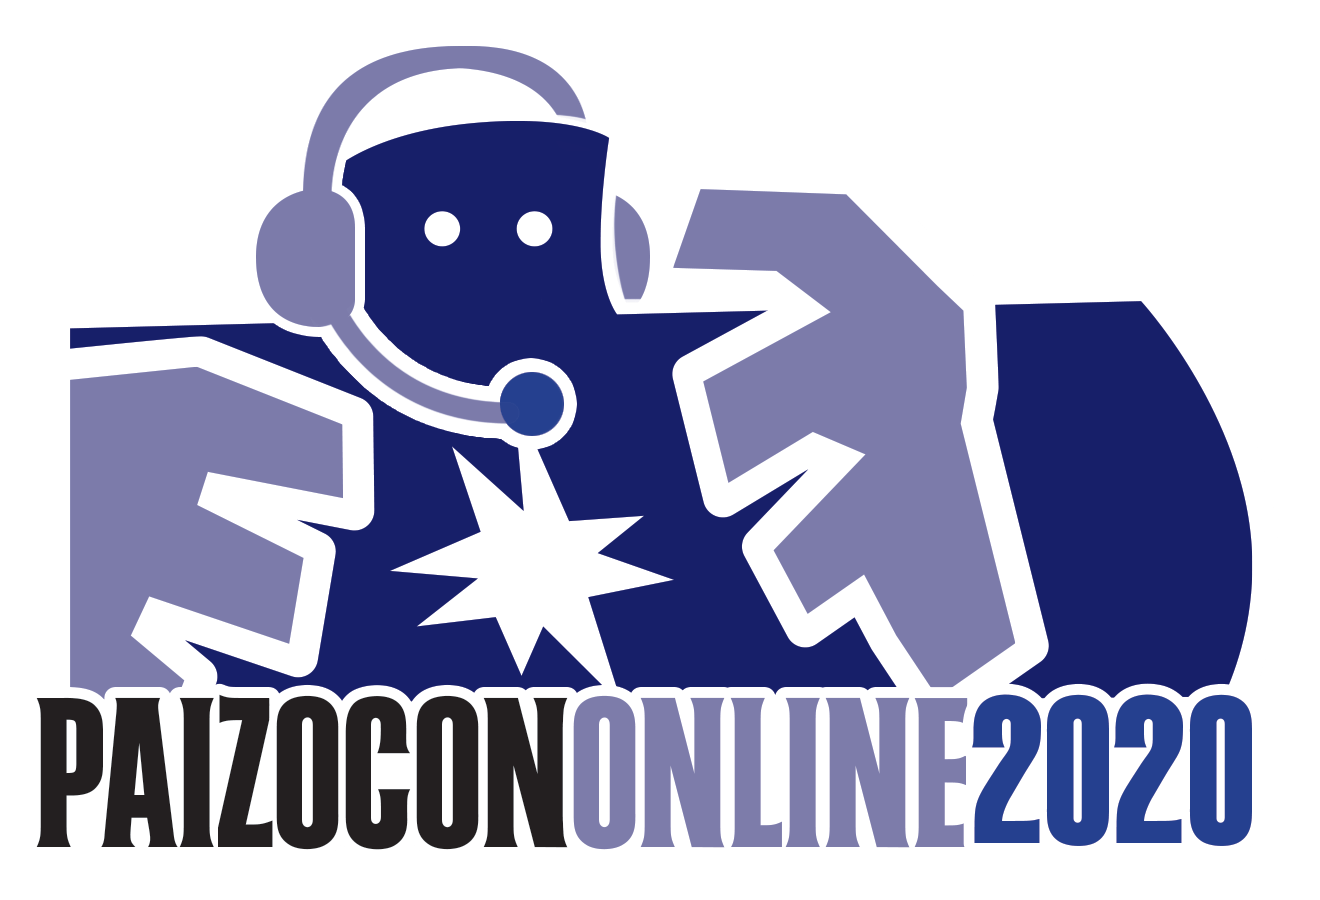 PaizoCon Online 2020